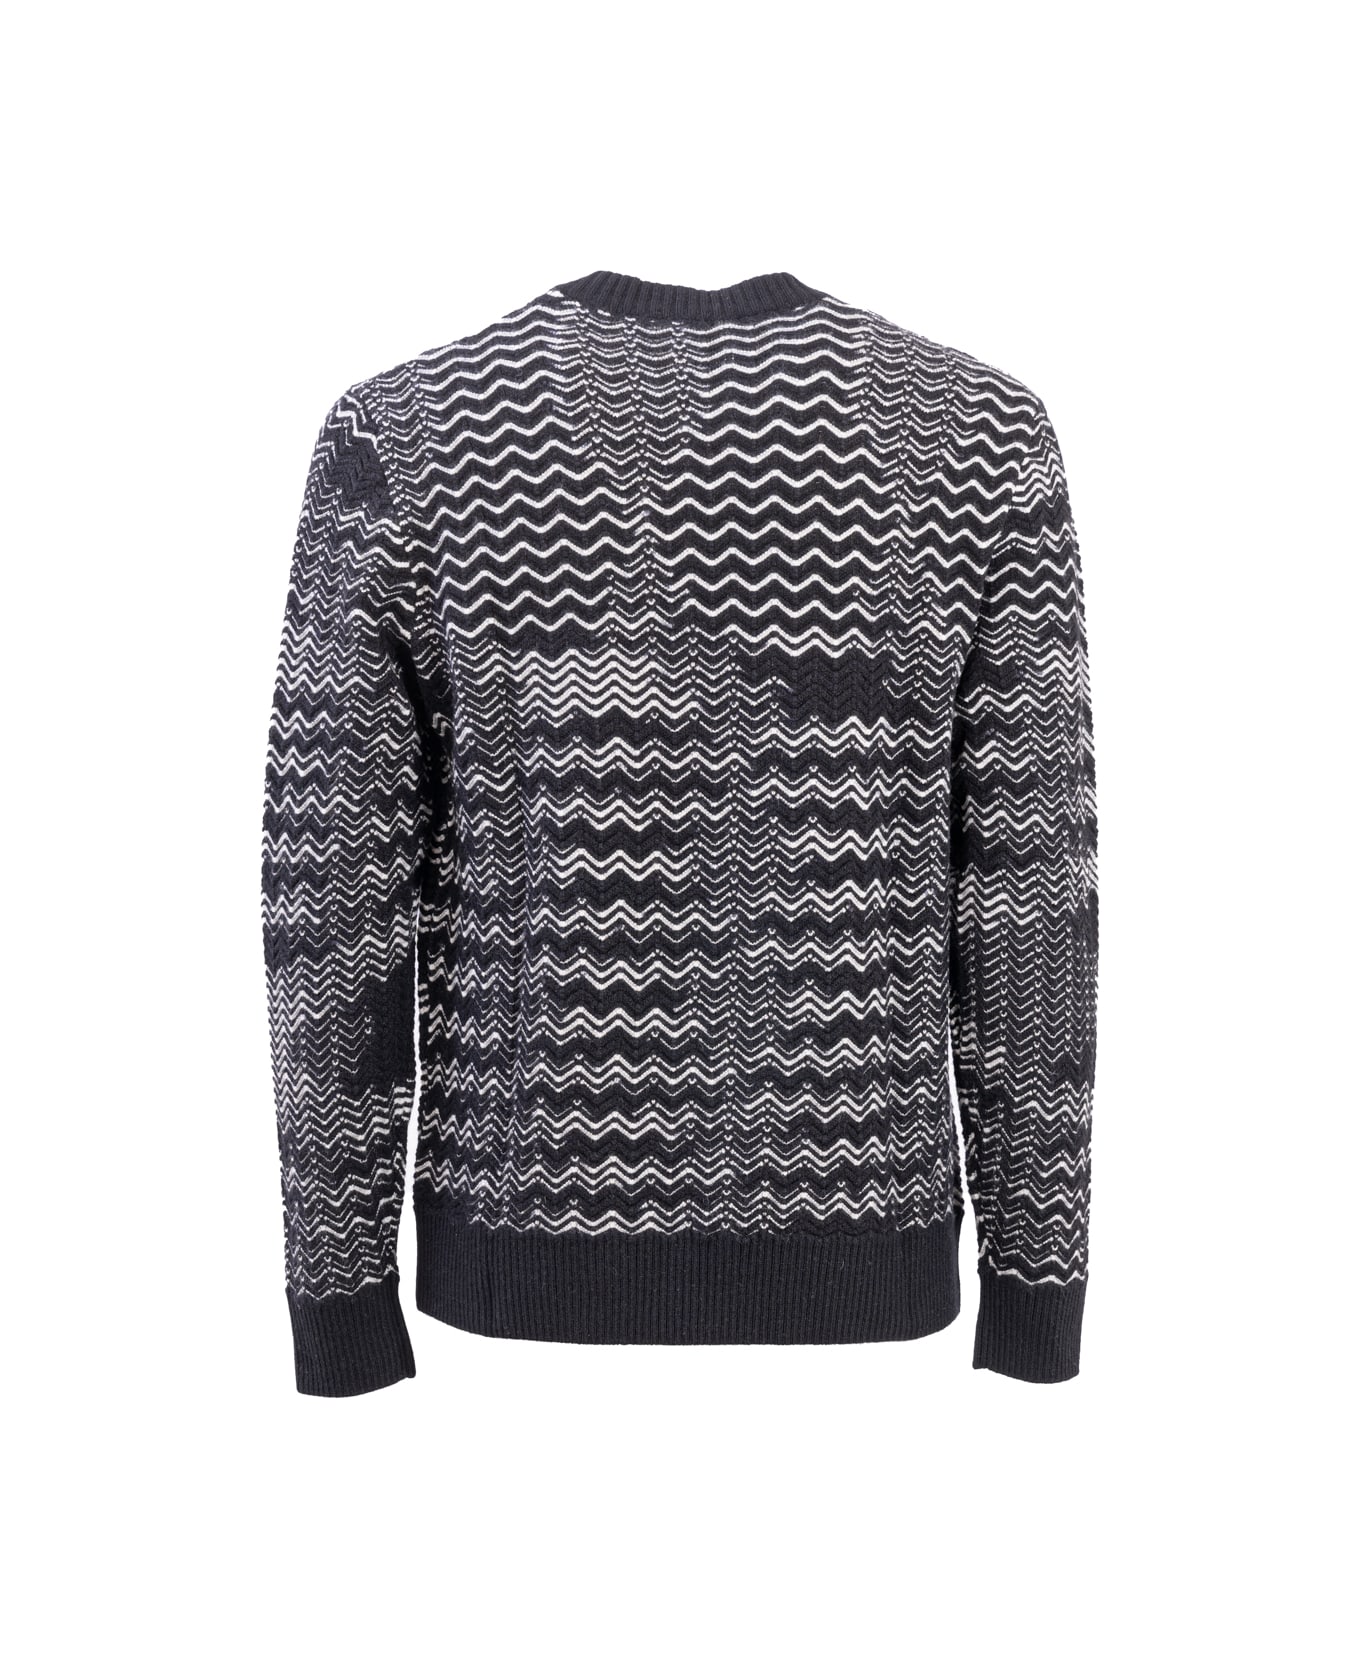 Missoni Knitted Pullover - Nero e Bianco ニットウェア